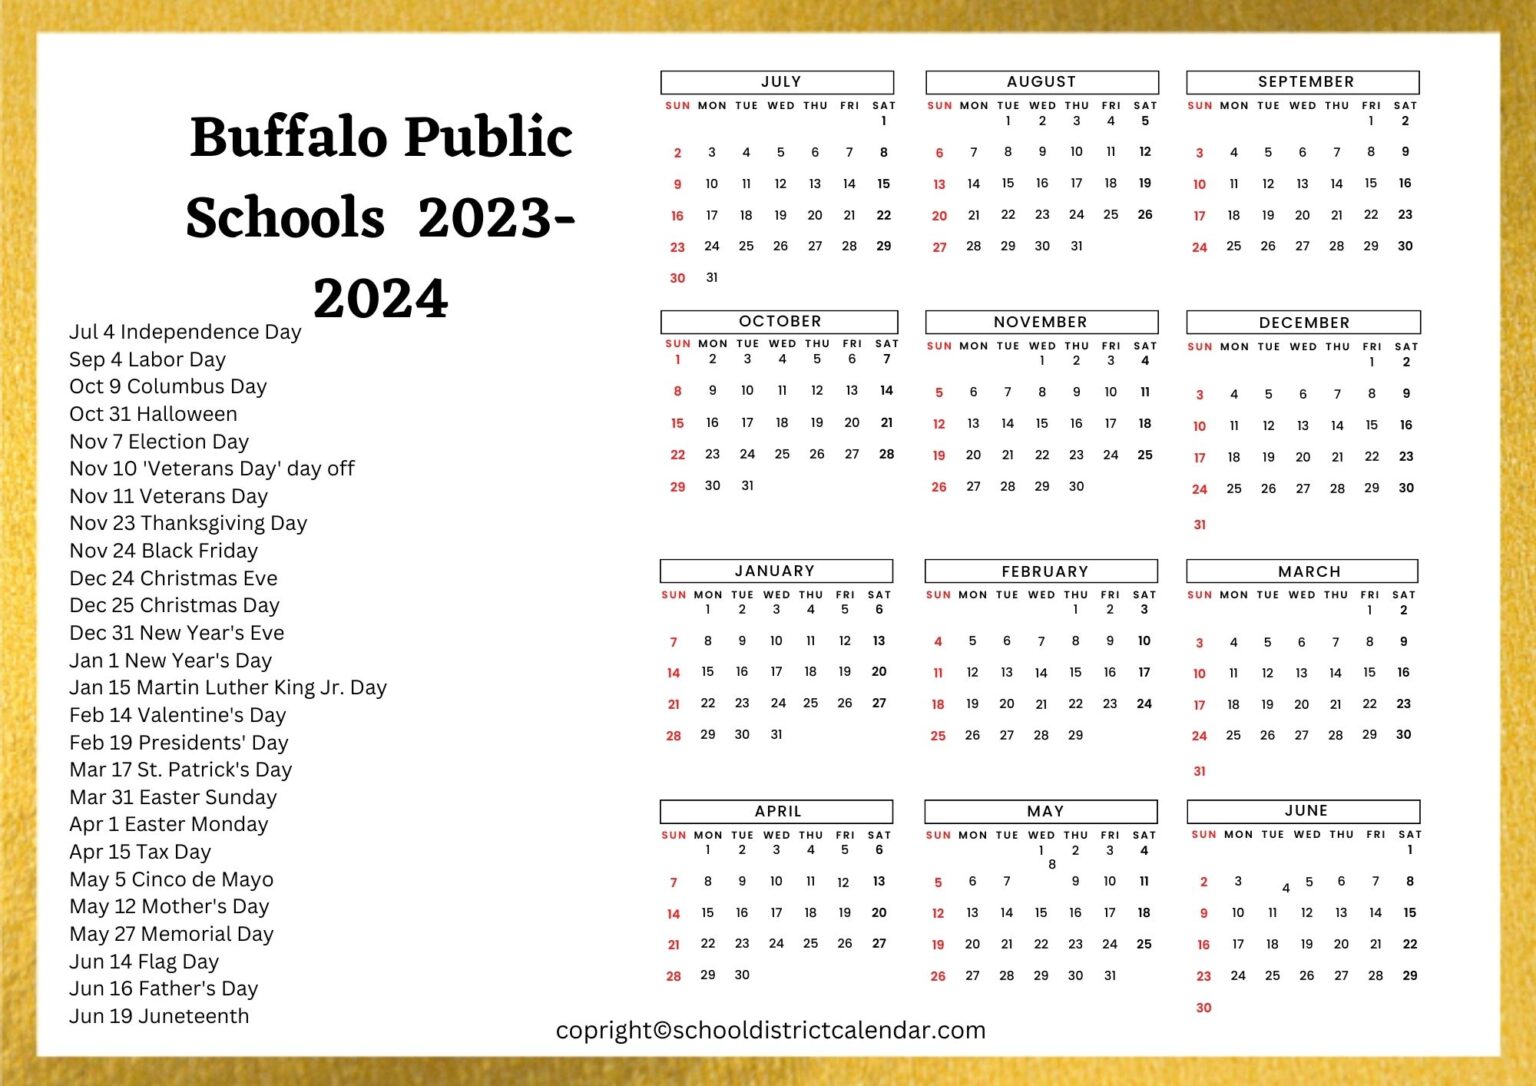 buffalo-public-schools-calendar-holidays-2023-2024